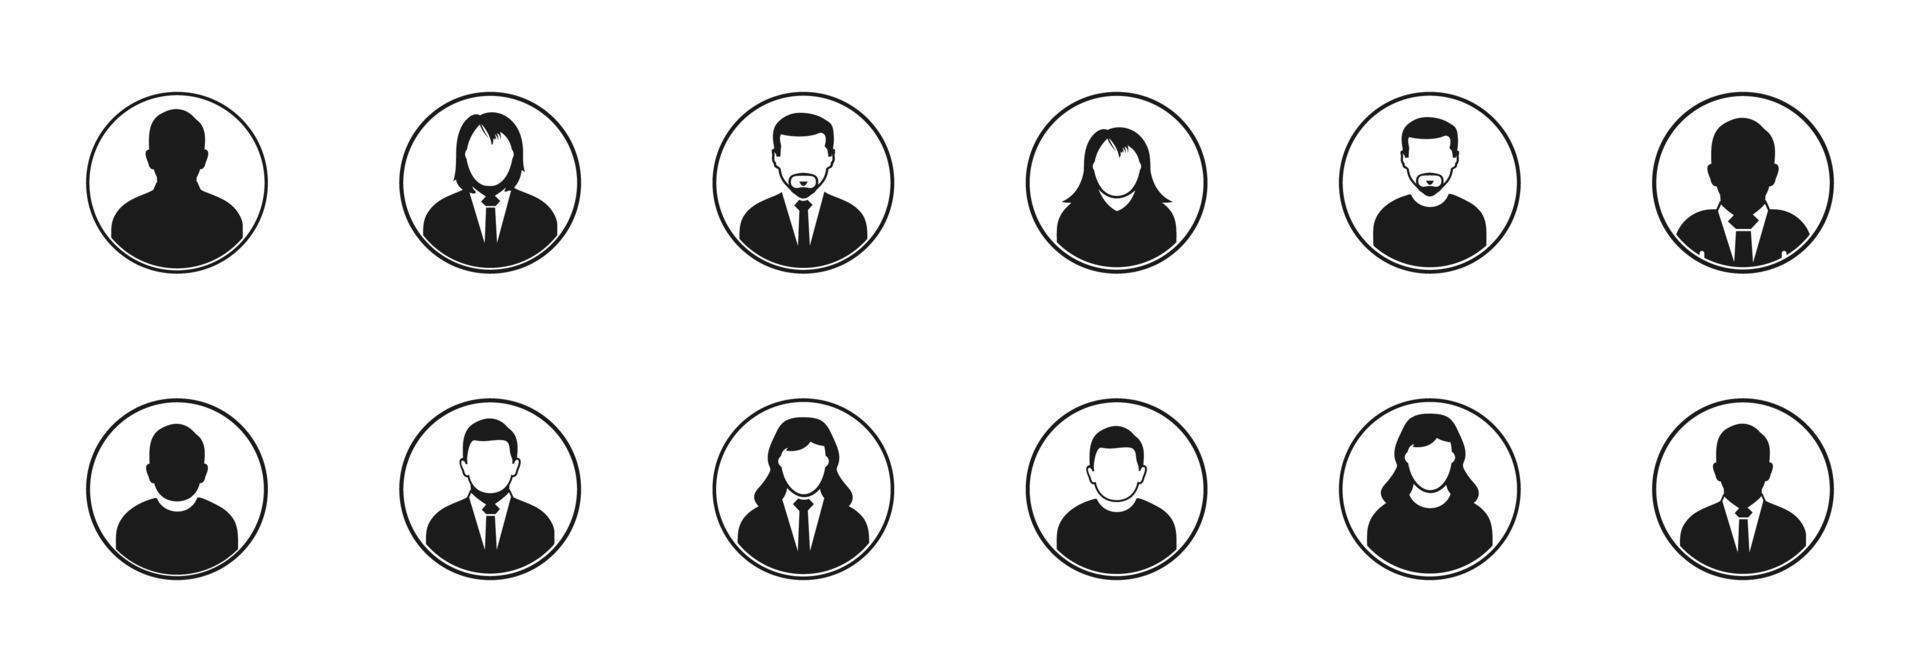 usuario perfil icono colocar. colección de persona, gente, hombre, mujer, masculino, femenino, chico, chica, empresario y avatar iconos editable vector símbolo ilustración.